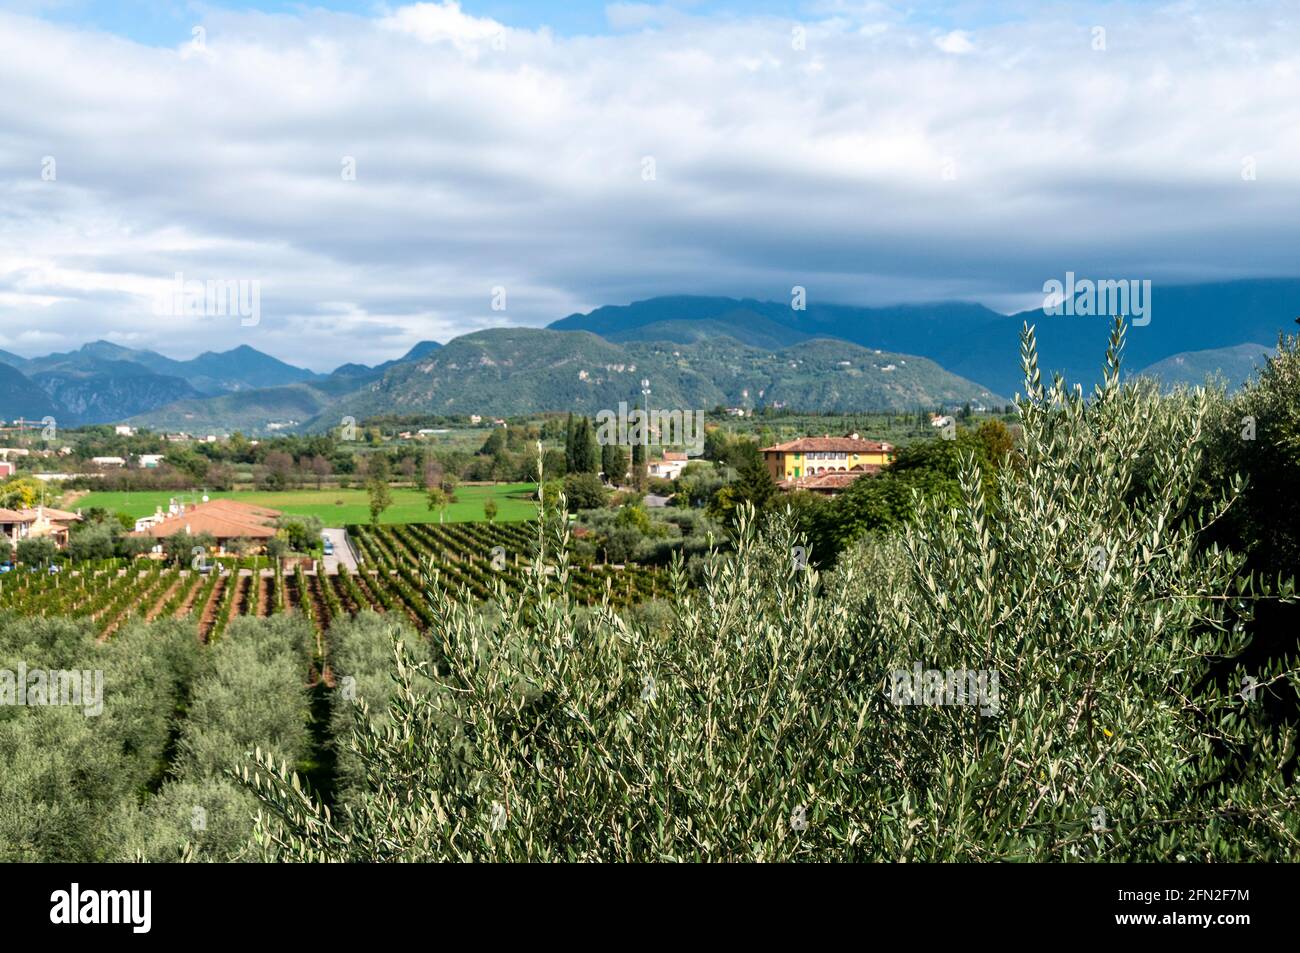 Vignobles et l'extrémité sud des Alpes italiennes sur le côté ouest du lac de Garde dans le nord de l'Italie. Banque D'Images